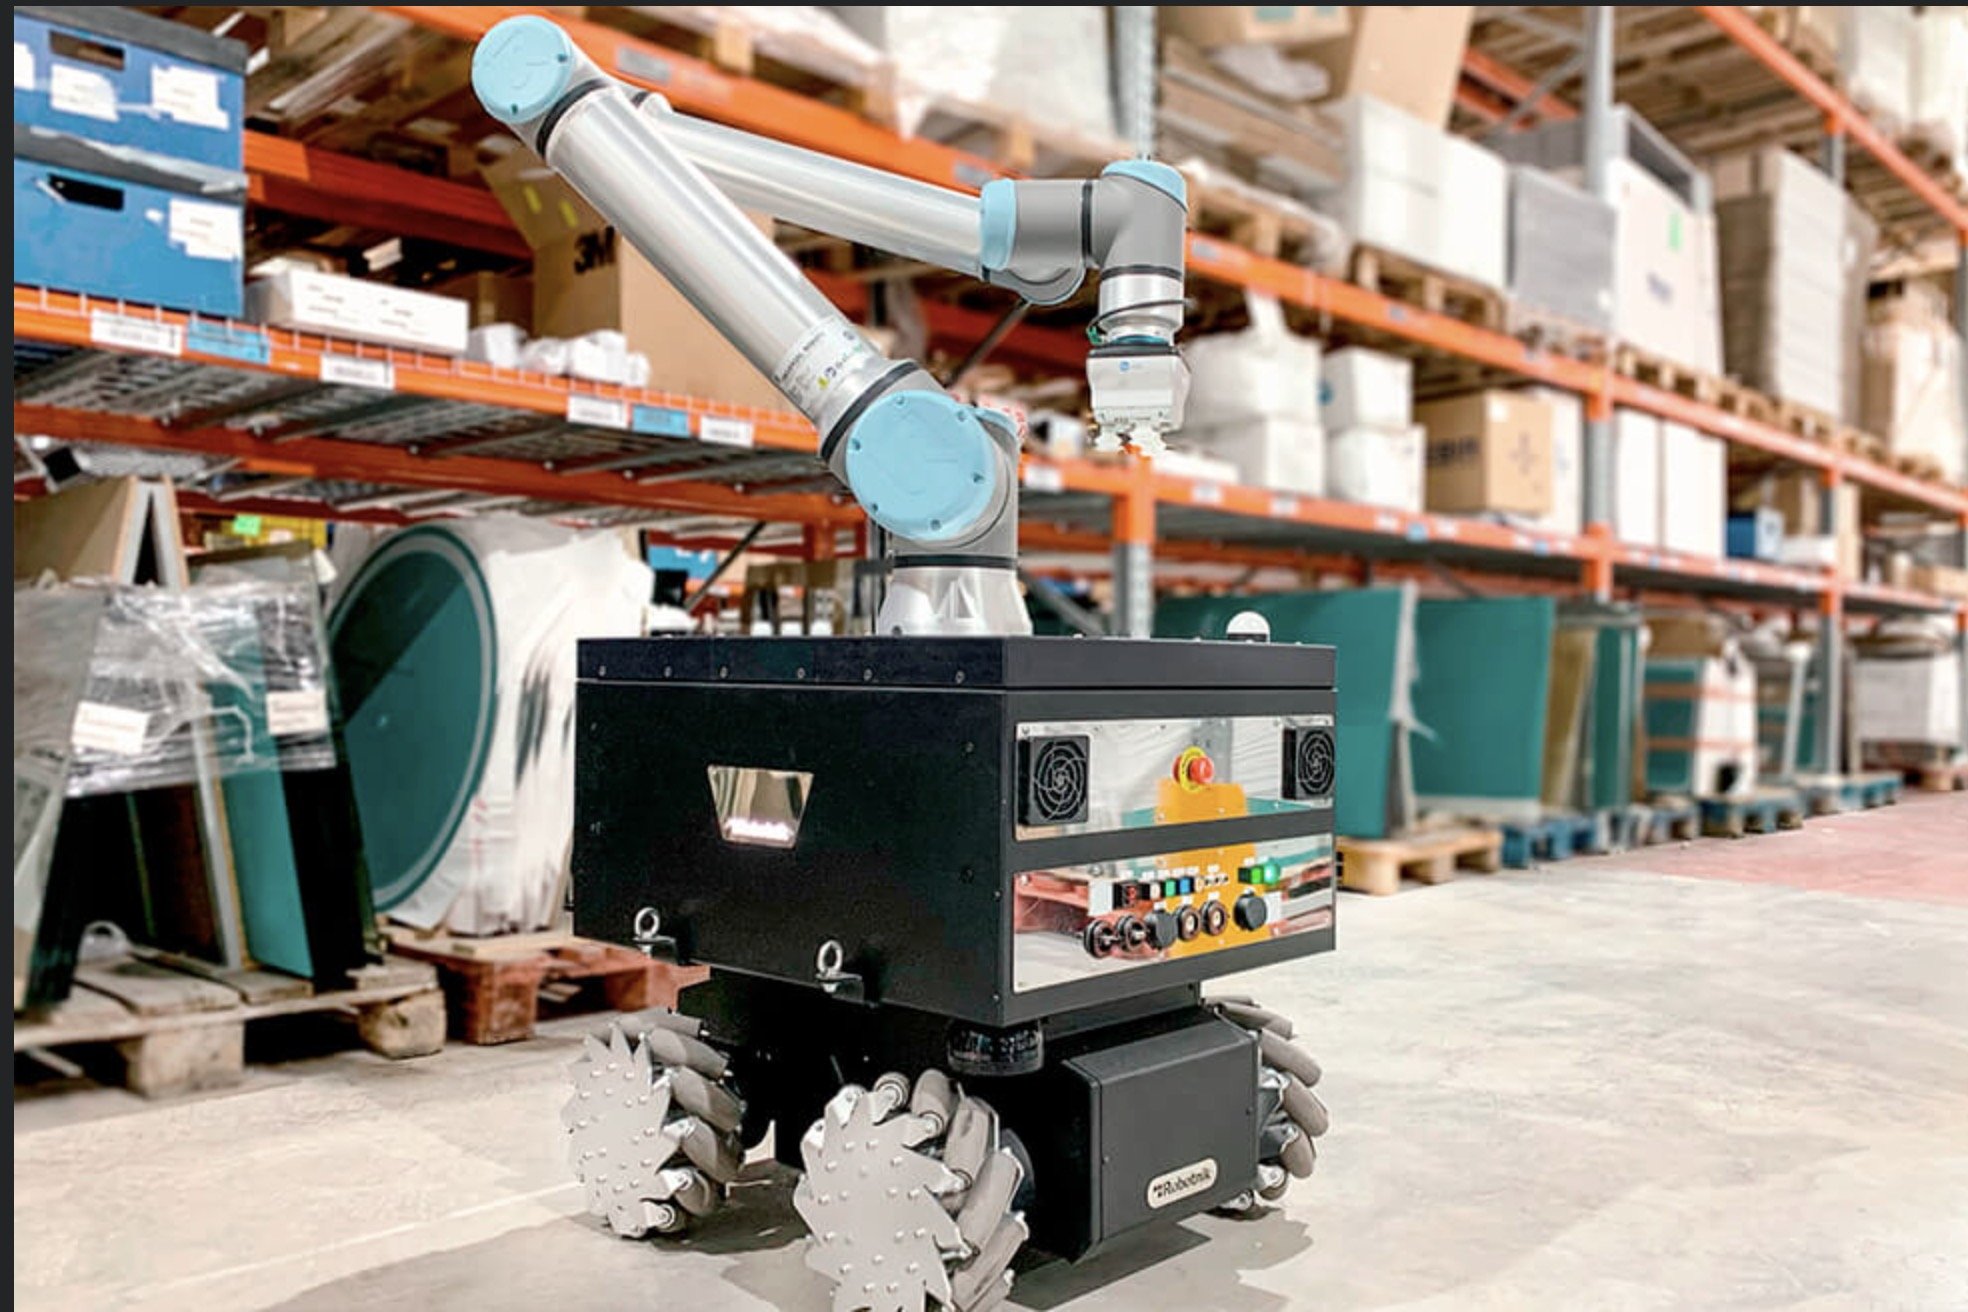 פיתוח חדש: רובוט מתנייע אוטונומי למגוון משימות תעשייתיות בסביבה עם קושי לשילוב בני אדם בגלל בעיות נגישות או הימצאות חומרים רעילים